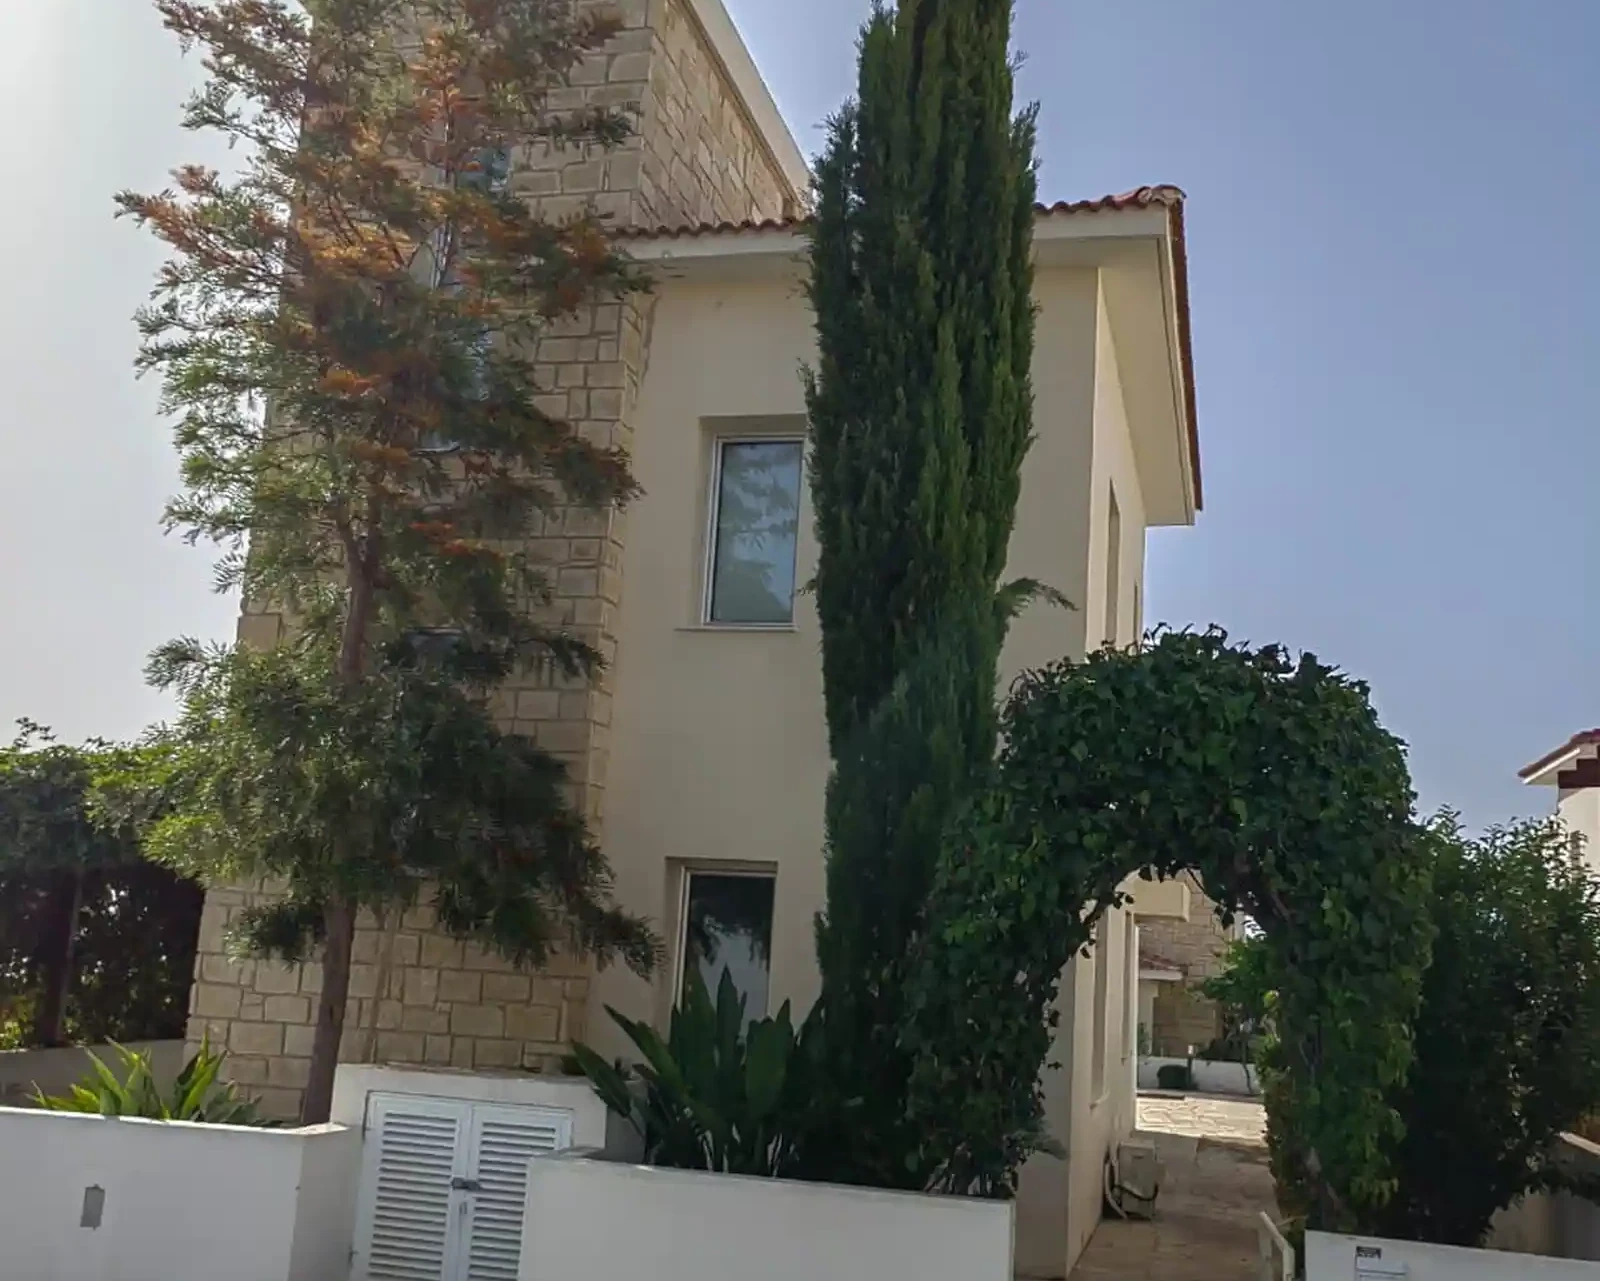 3-bedroom villa to rent €1.300, image 1